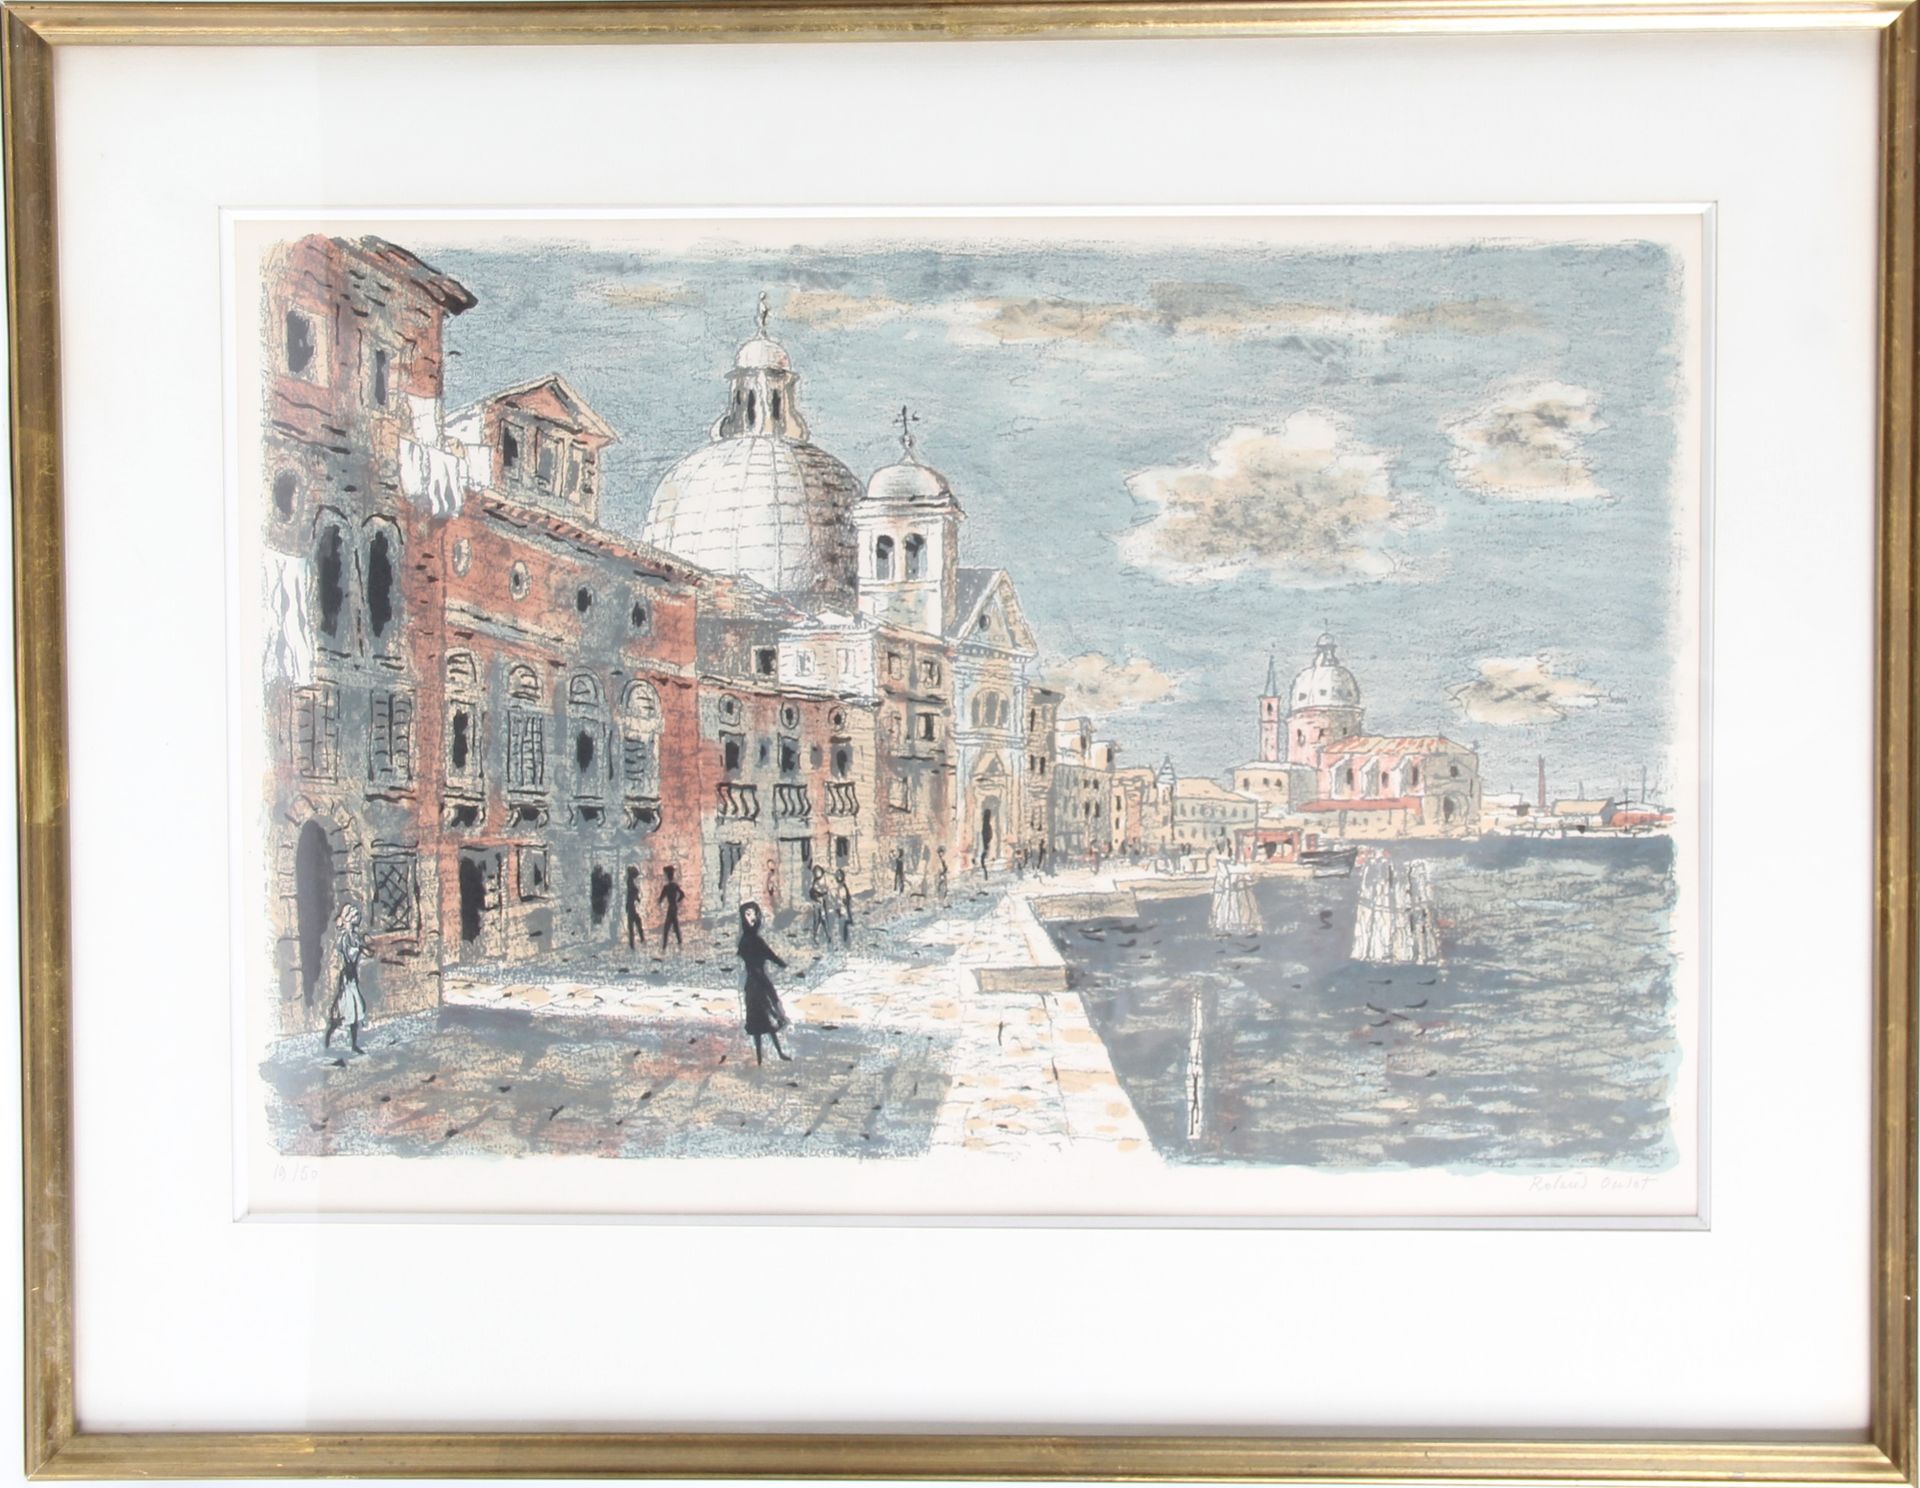 Null ROLAND OUDOT (1897-1981)

" Venedig " 

Lithografie, nummeriert Nr. 19/50. &hellip;